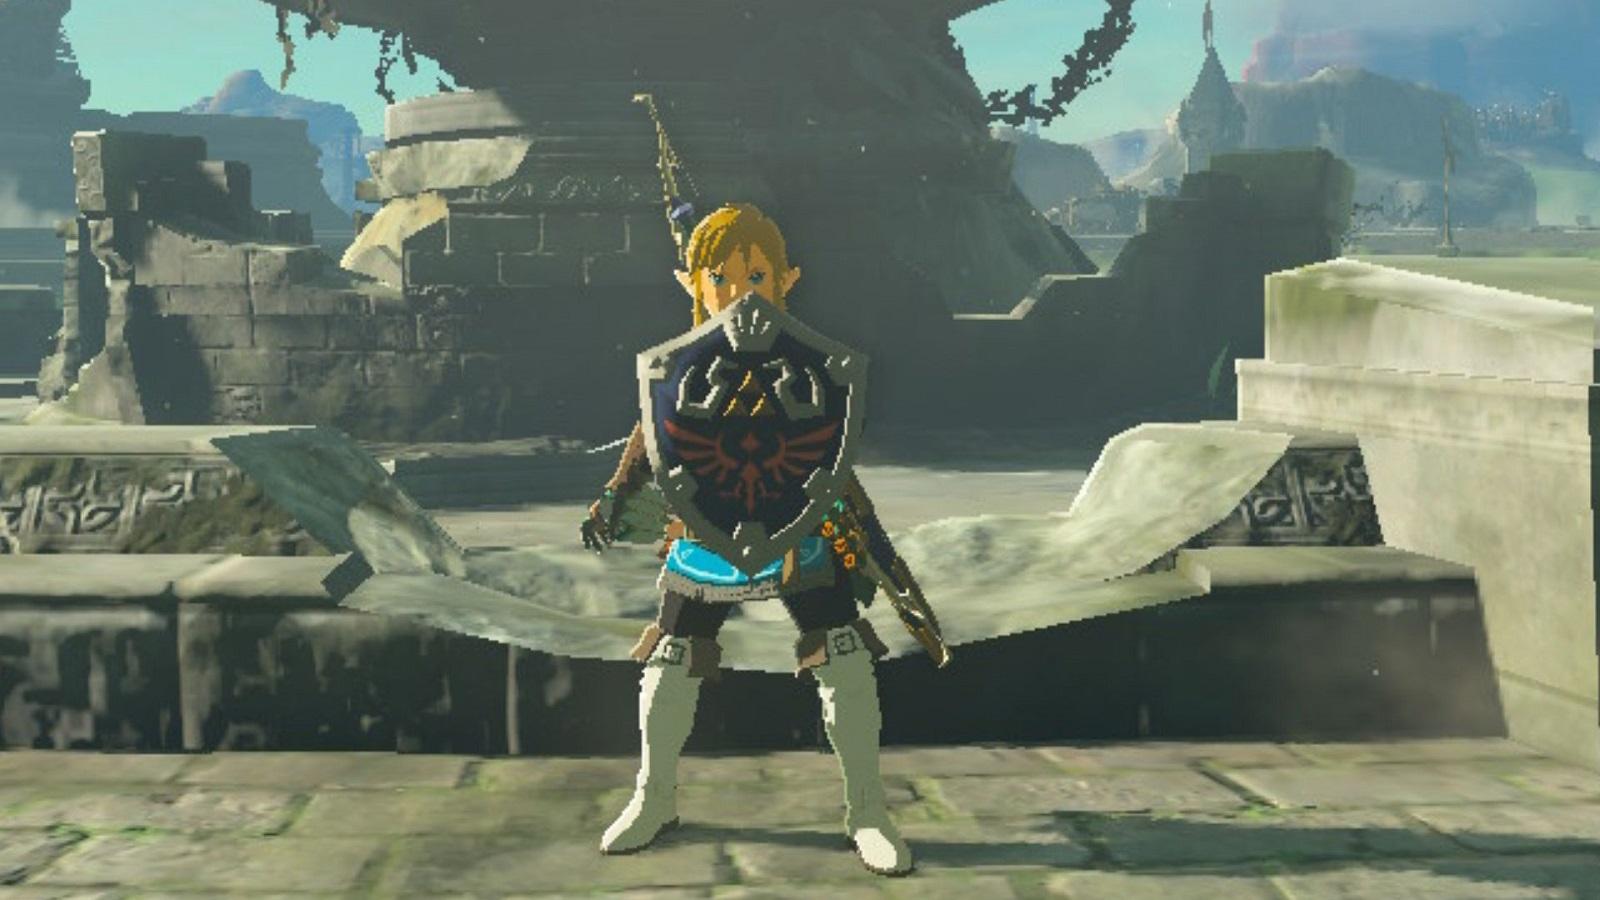 Link wielding the Hylian Shield